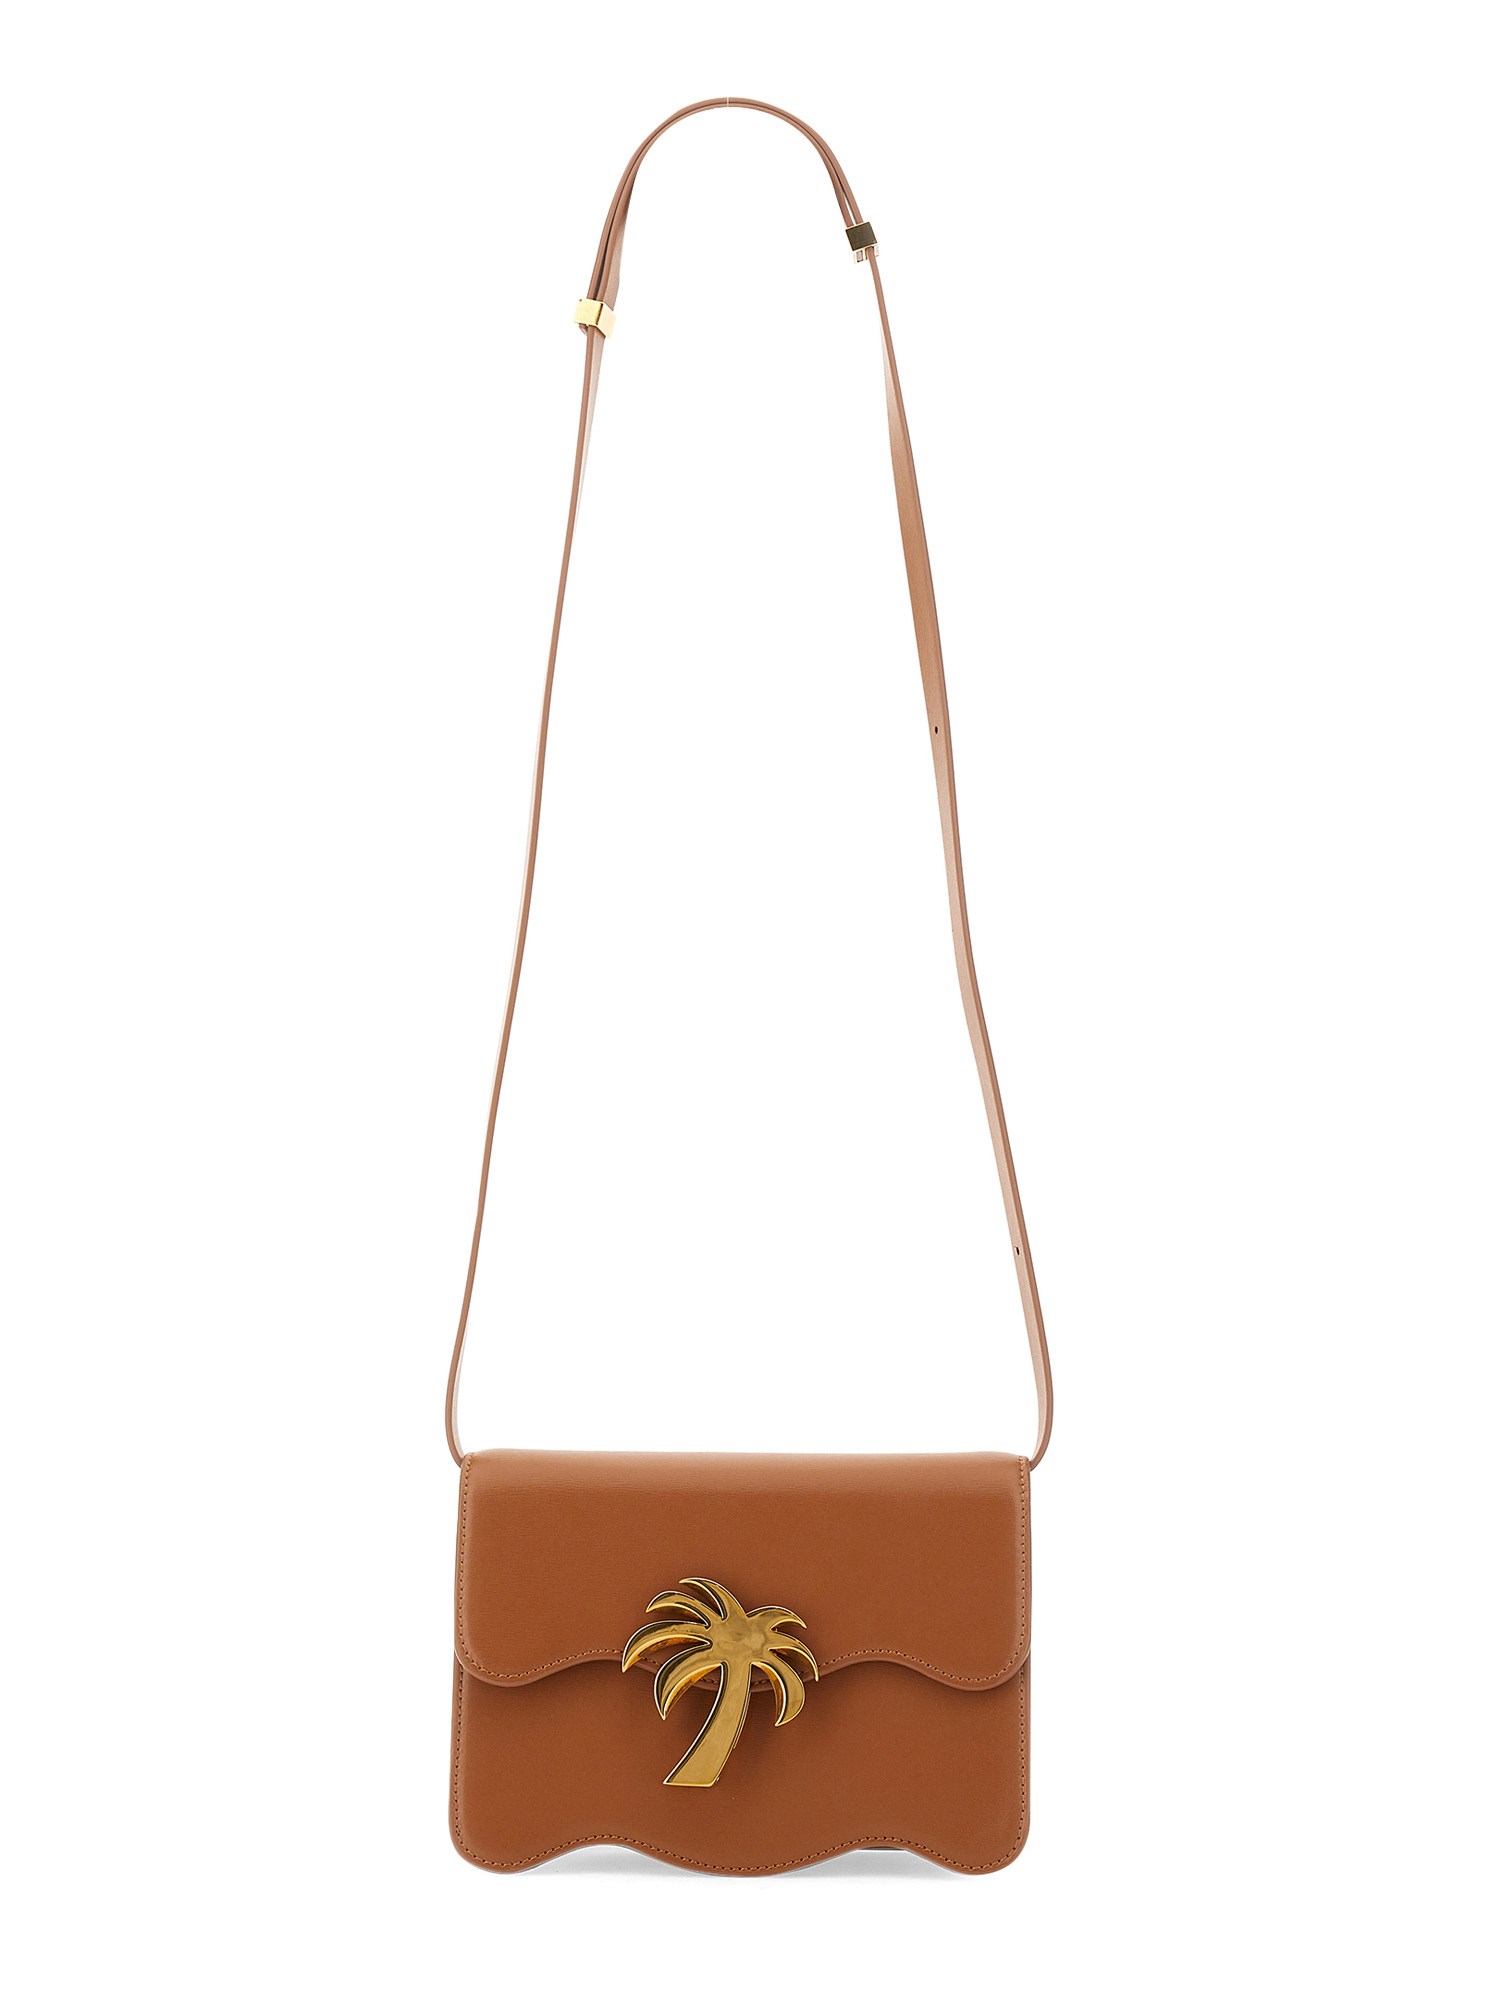 palm angels palm beach bag